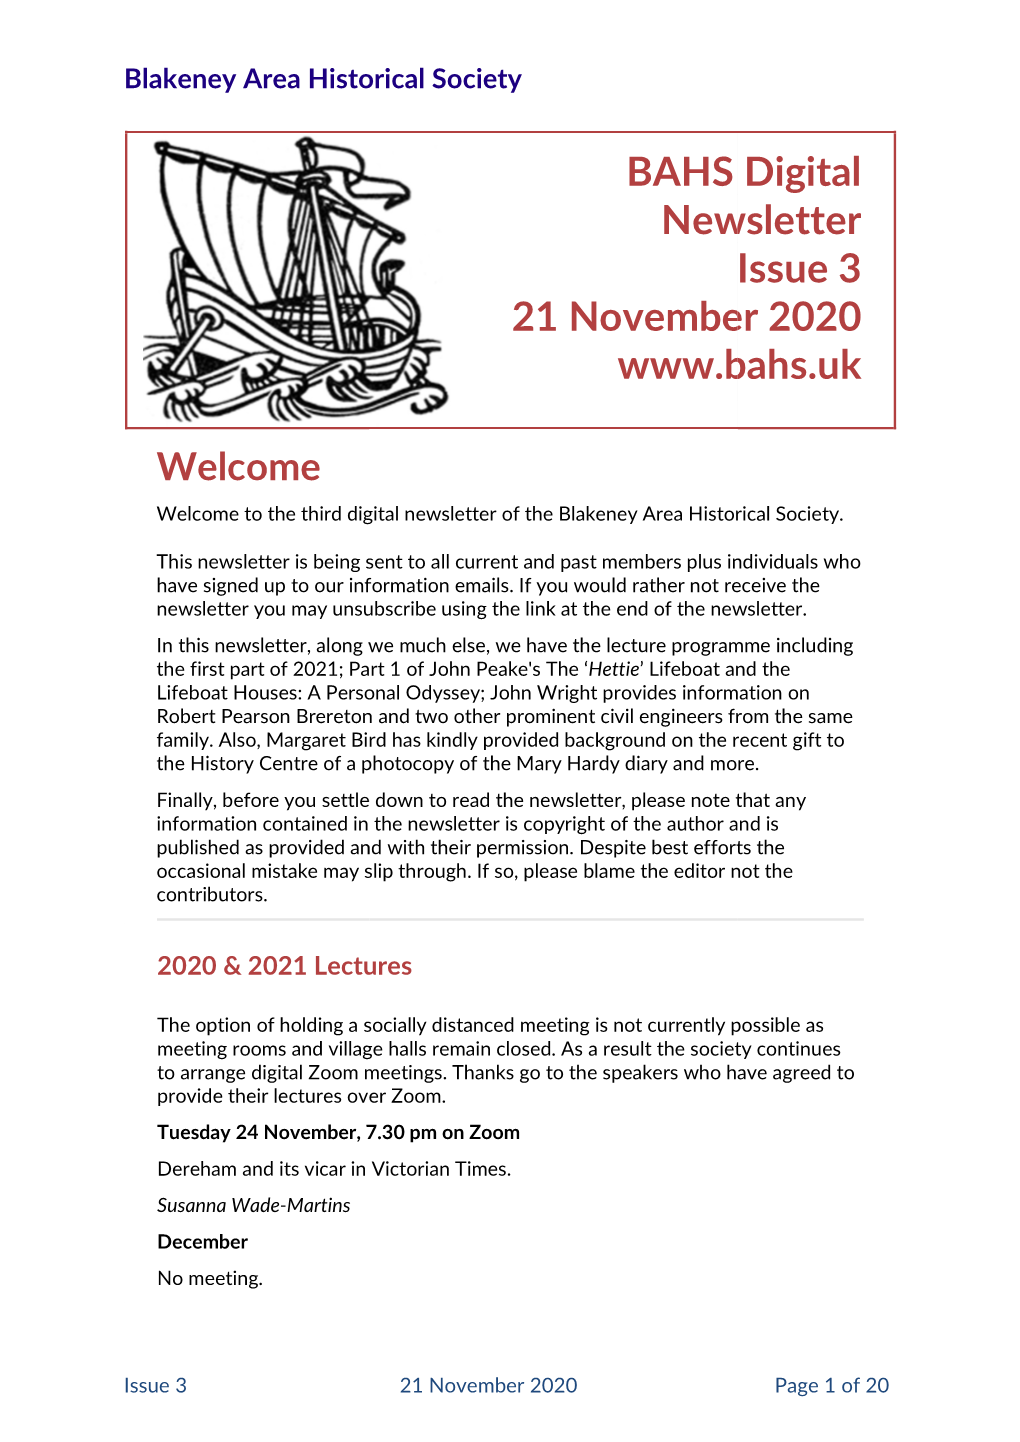 BAHS Digital Newsletter Issue 21 November 2020